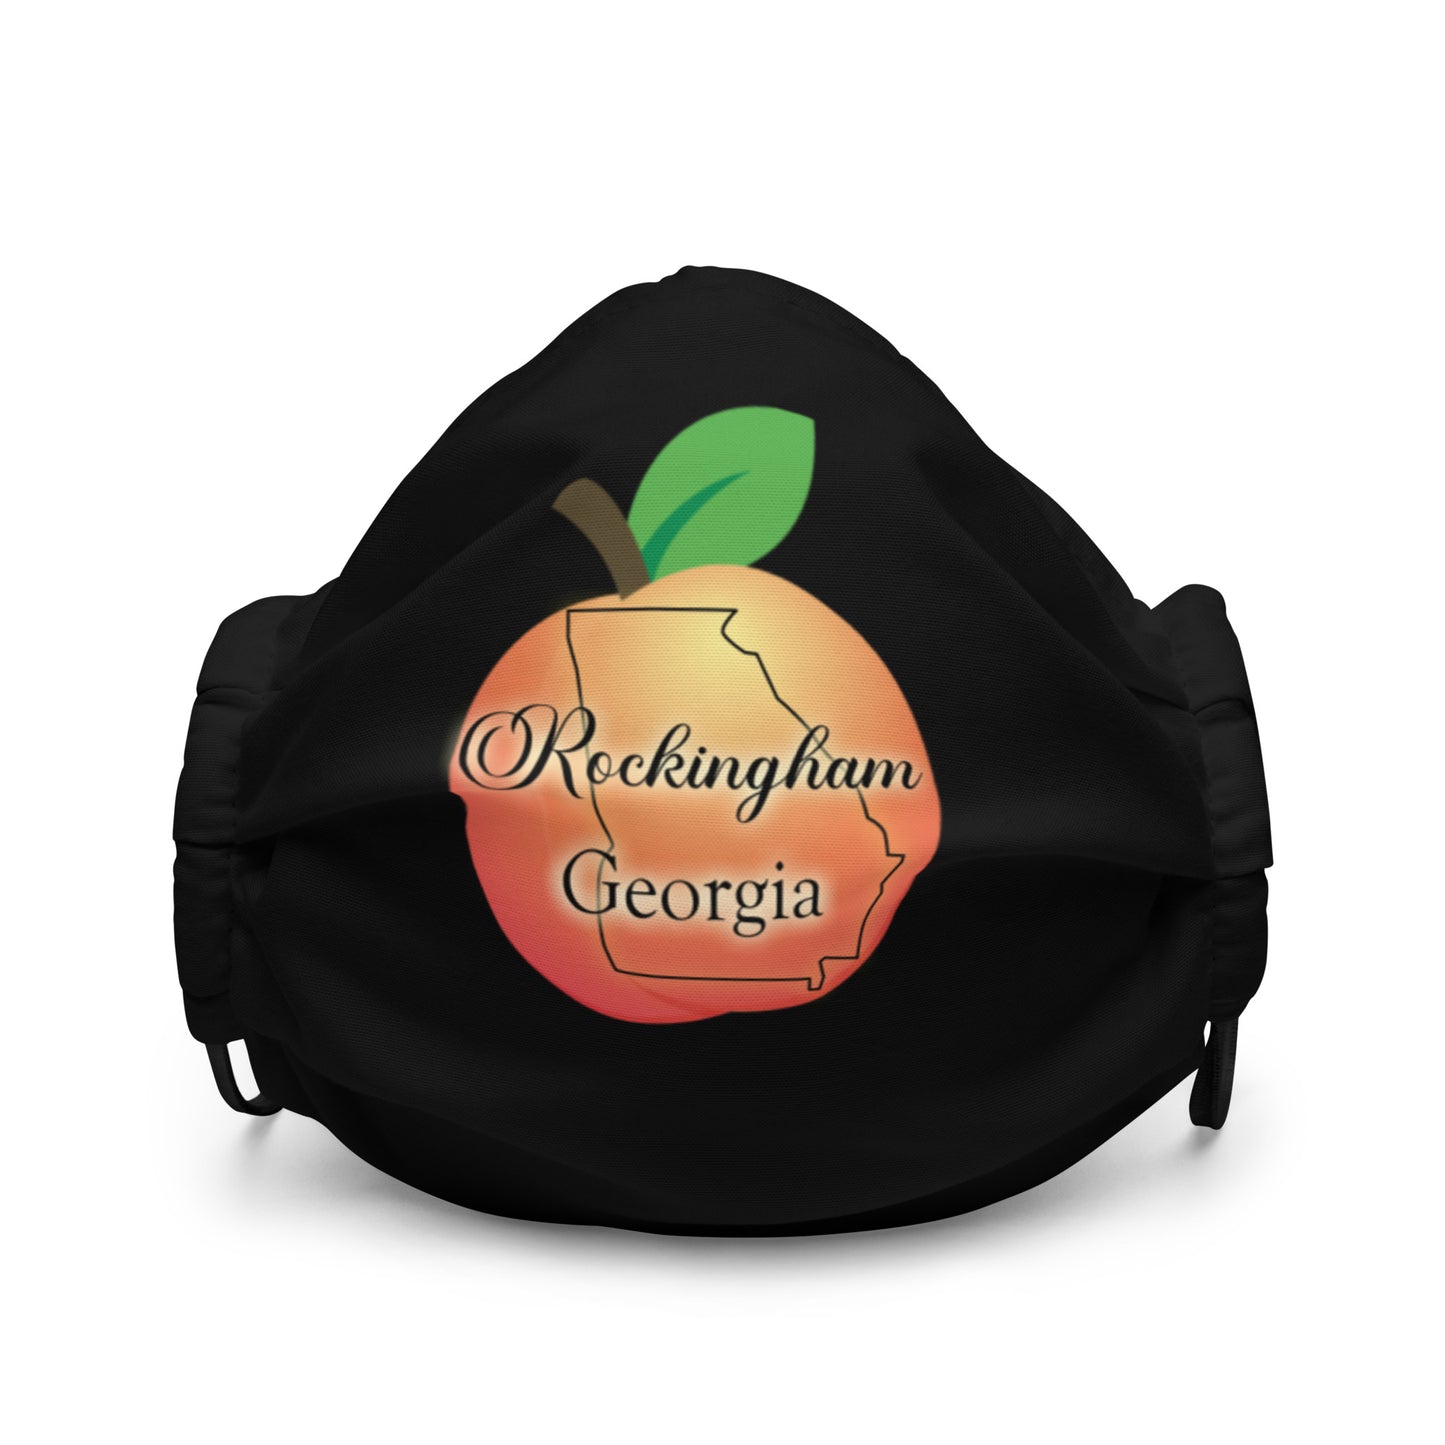 Rockingham Georgia Premium face mask